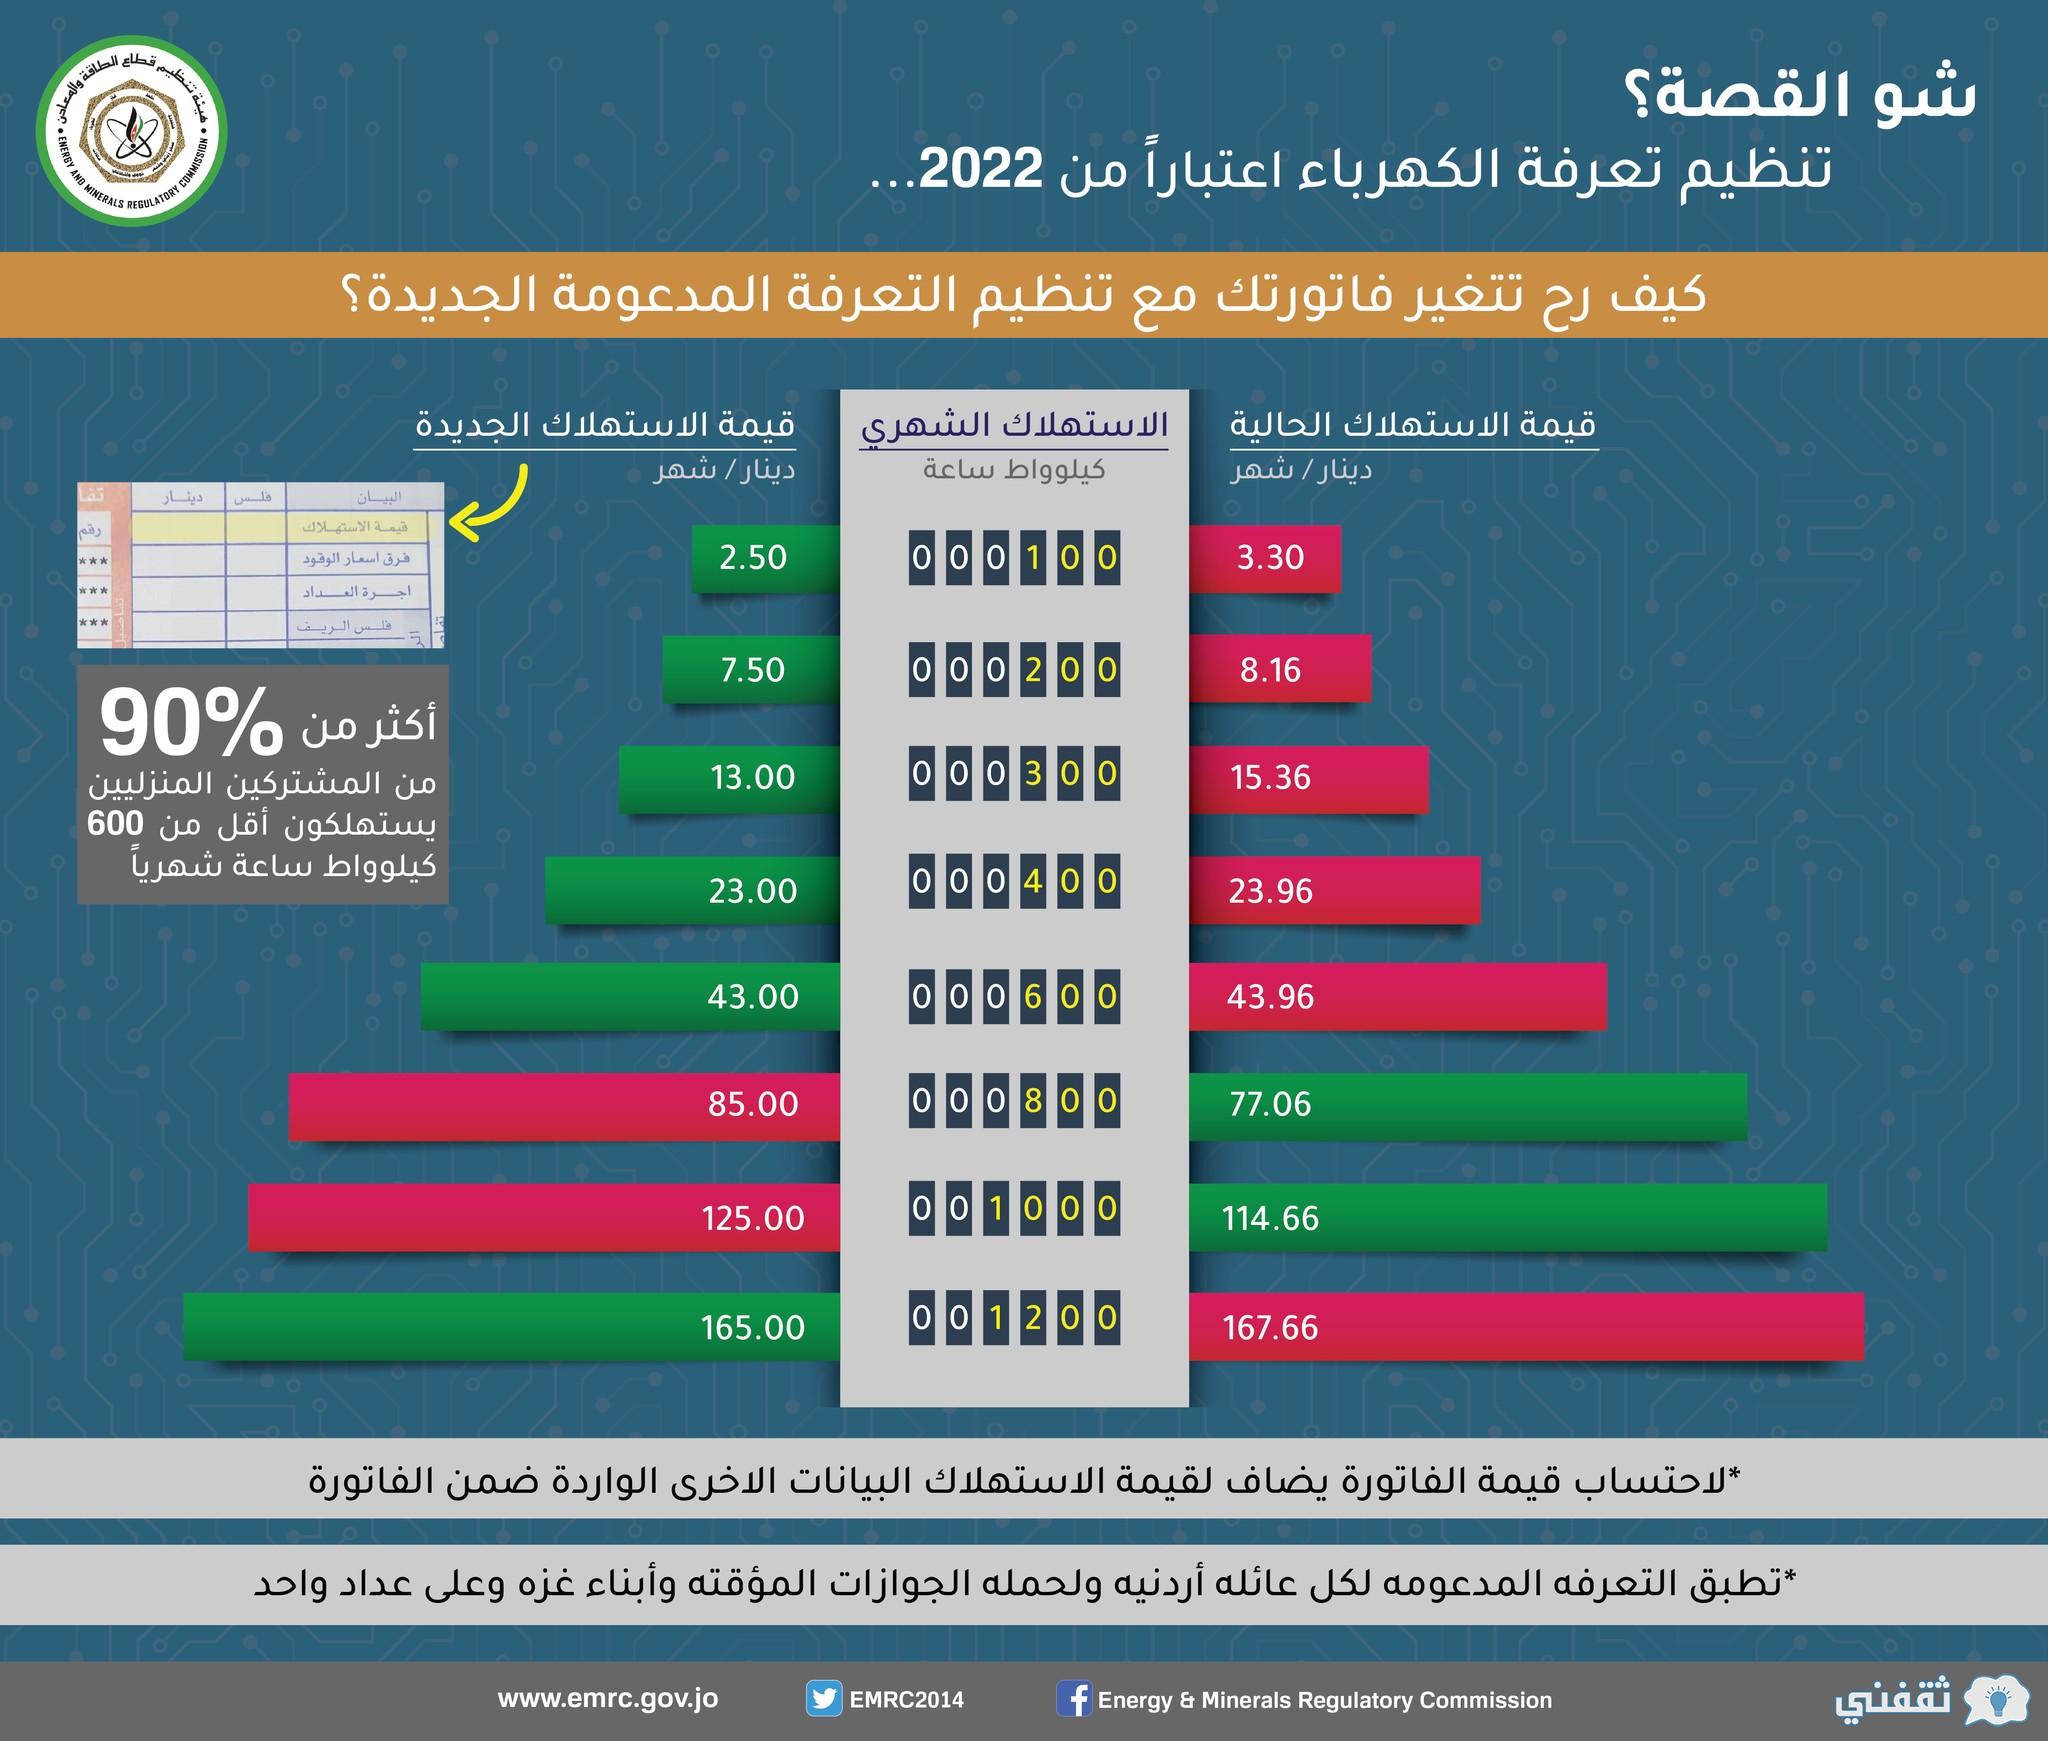 "ابدأ التسجيل" kahraba.gov.jo منصة دعم الكهرباء 2022 شروط الدعم المالي (منازل - مؤسسات)